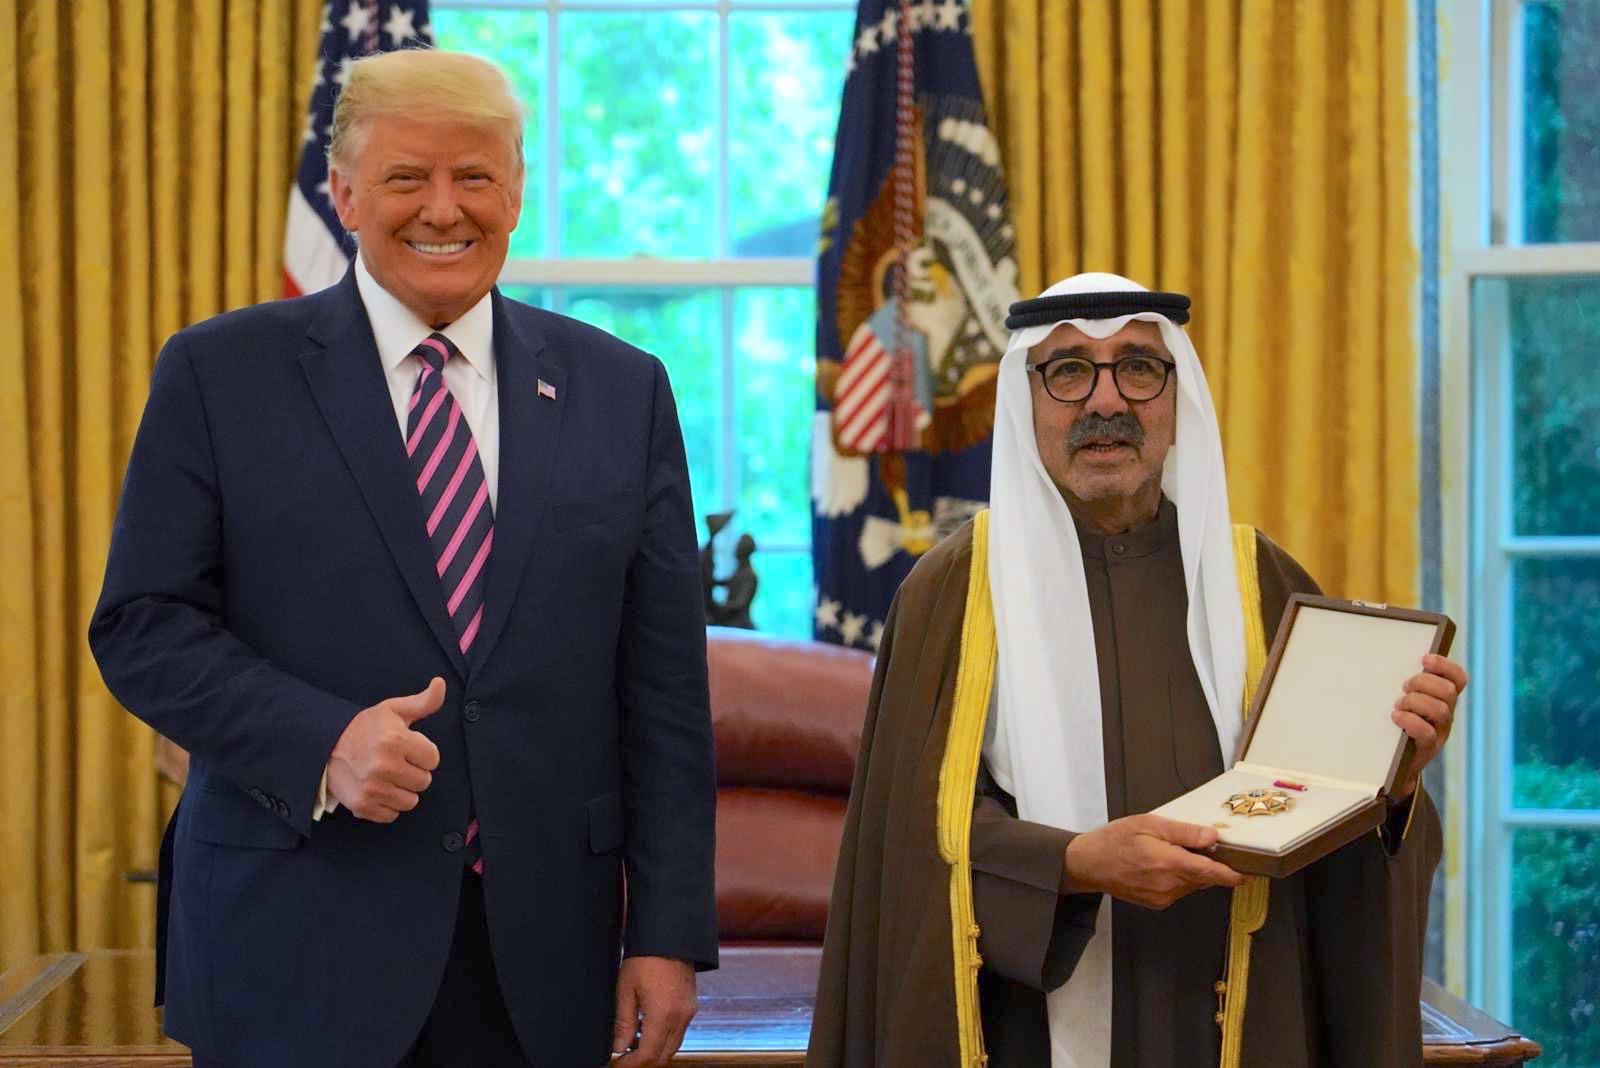 Cheikh Nasser Sabah Al-Ahmad Al-Jaber Al-Sabah recevant les insignes de Commandeur en chef de la légion de la part du président américain, Donald Trump.